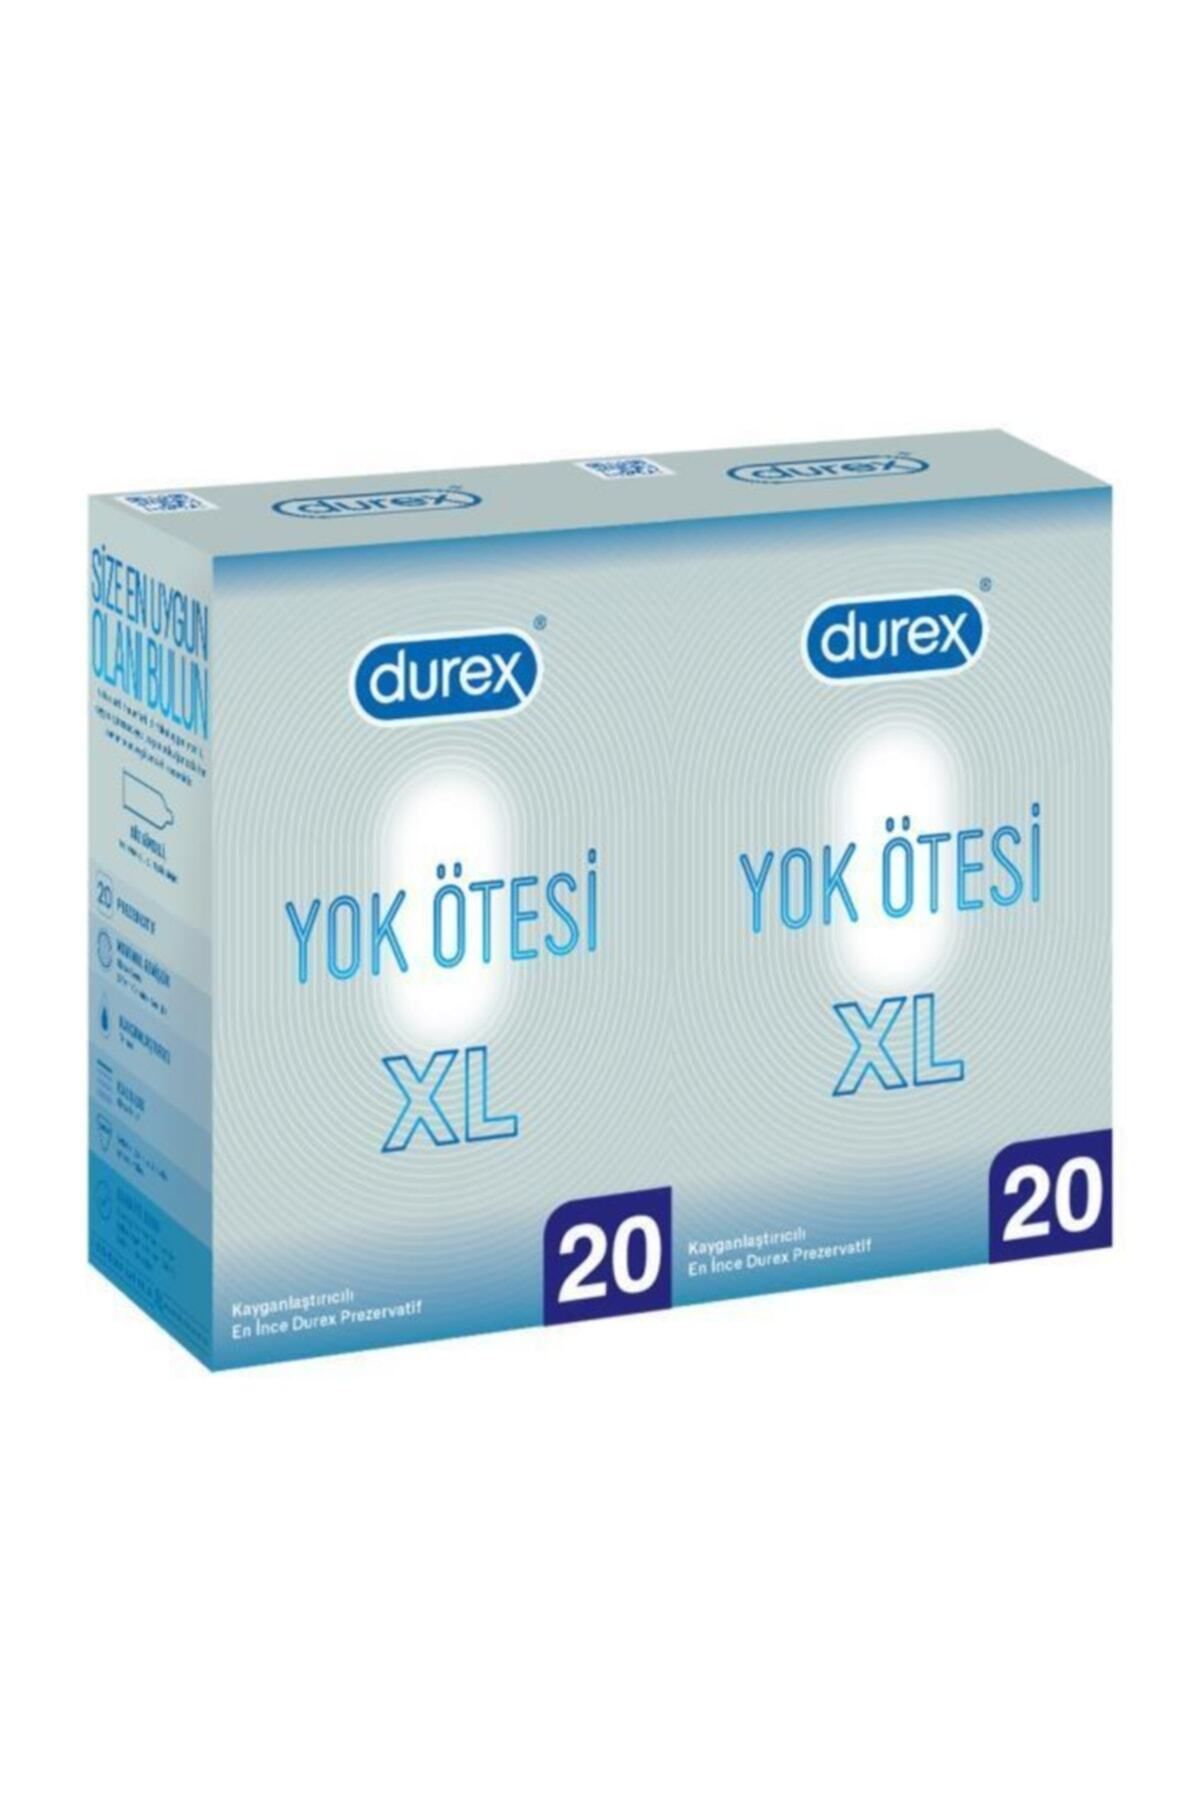 Durex Yok Ötesi Xl İnce Prezervatif 40lı (20x2 Adet), Geniş Fit